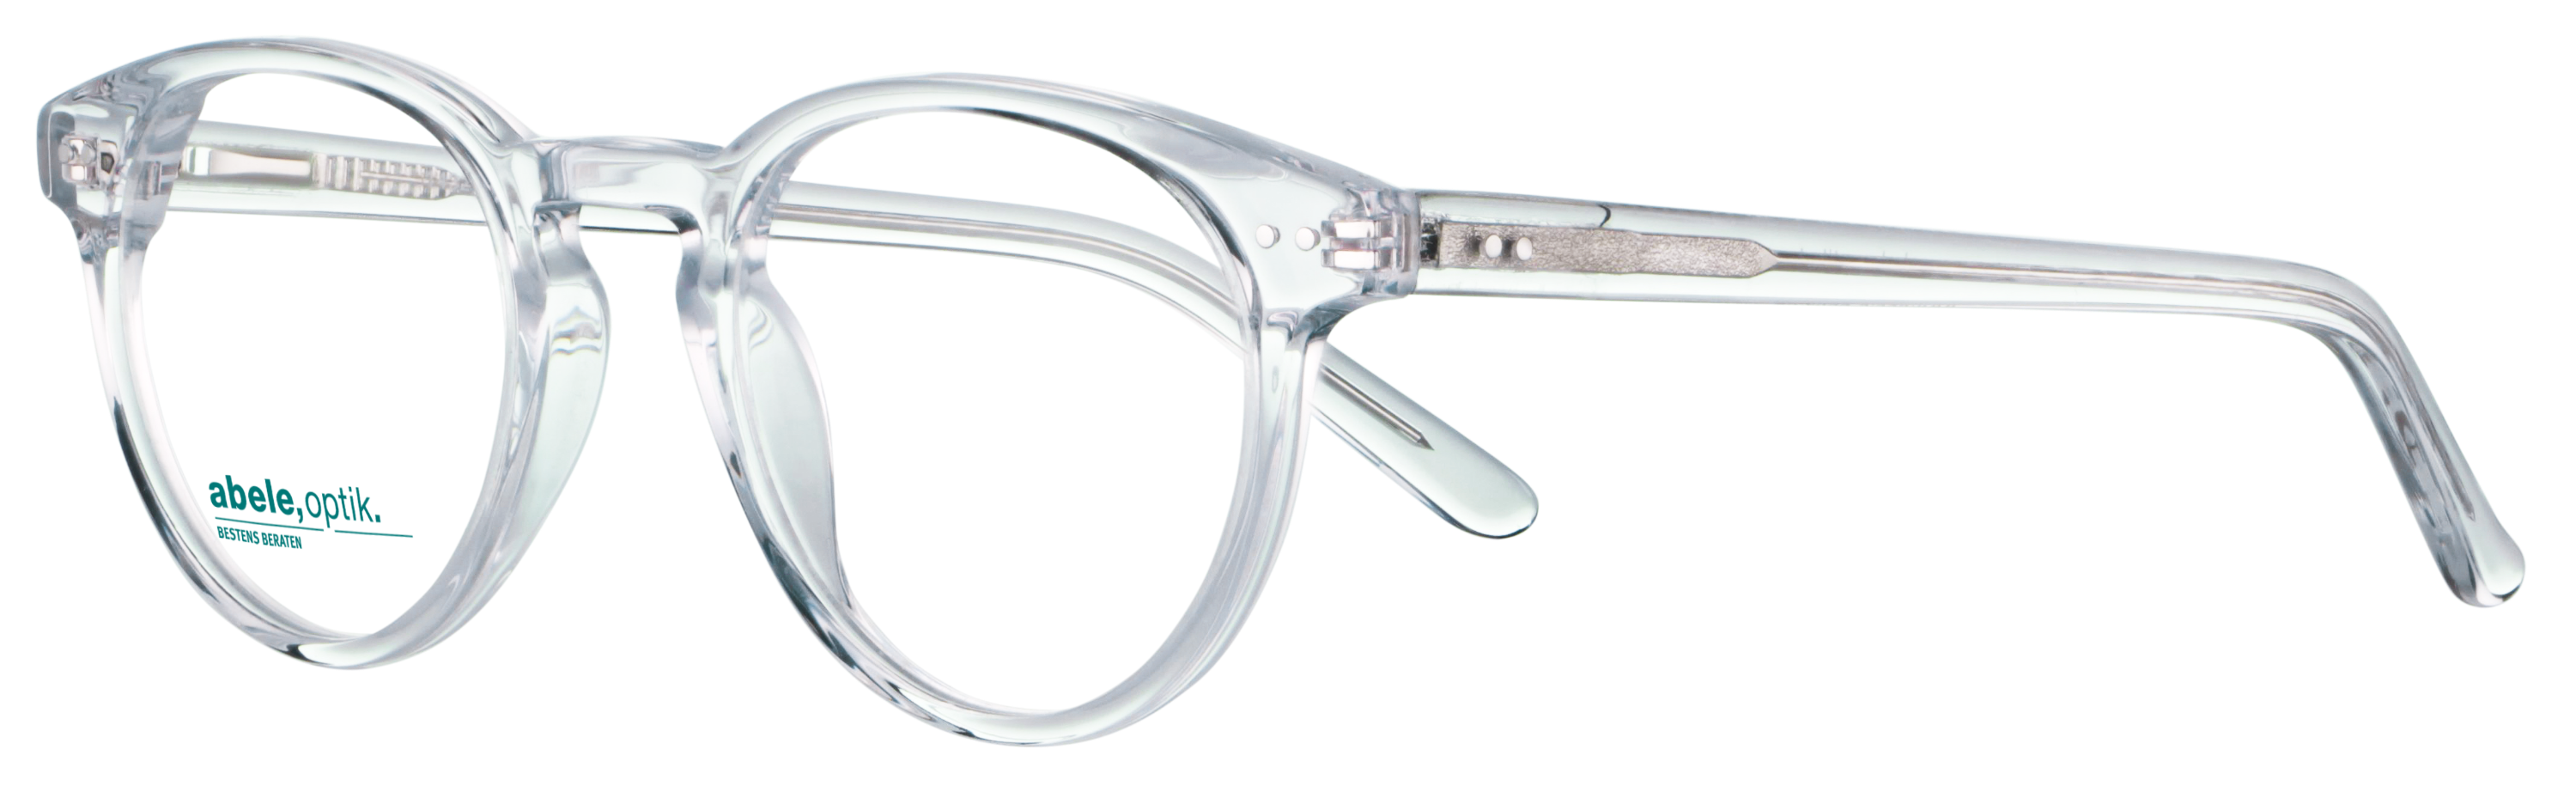 Das Bild zeigt die Korrektionsbrille 143231 von der Marke Abele Optik in transparent.